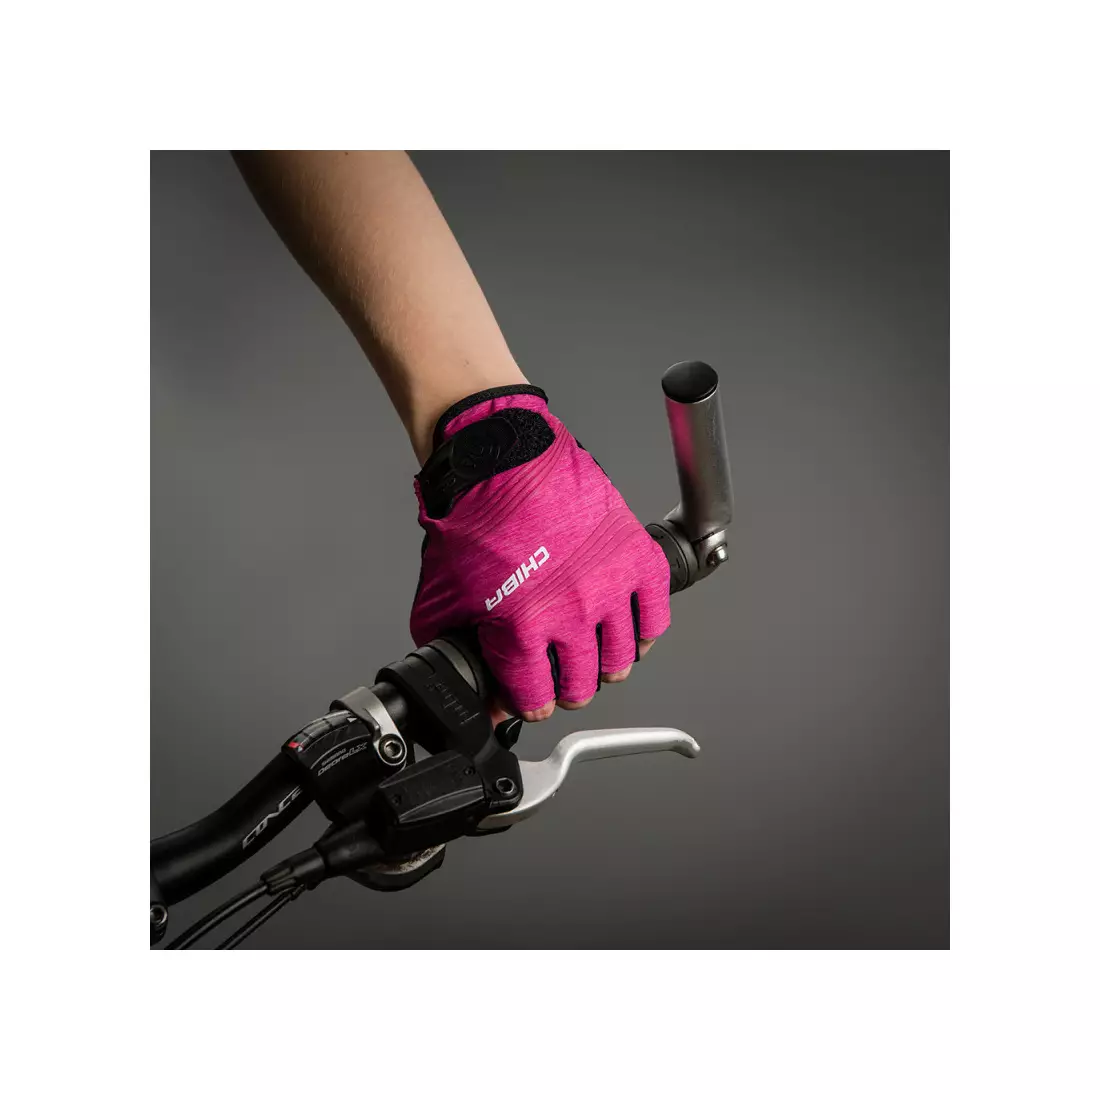 CHIBA dámské cyklistické rukavice lady super light růžový 3090220